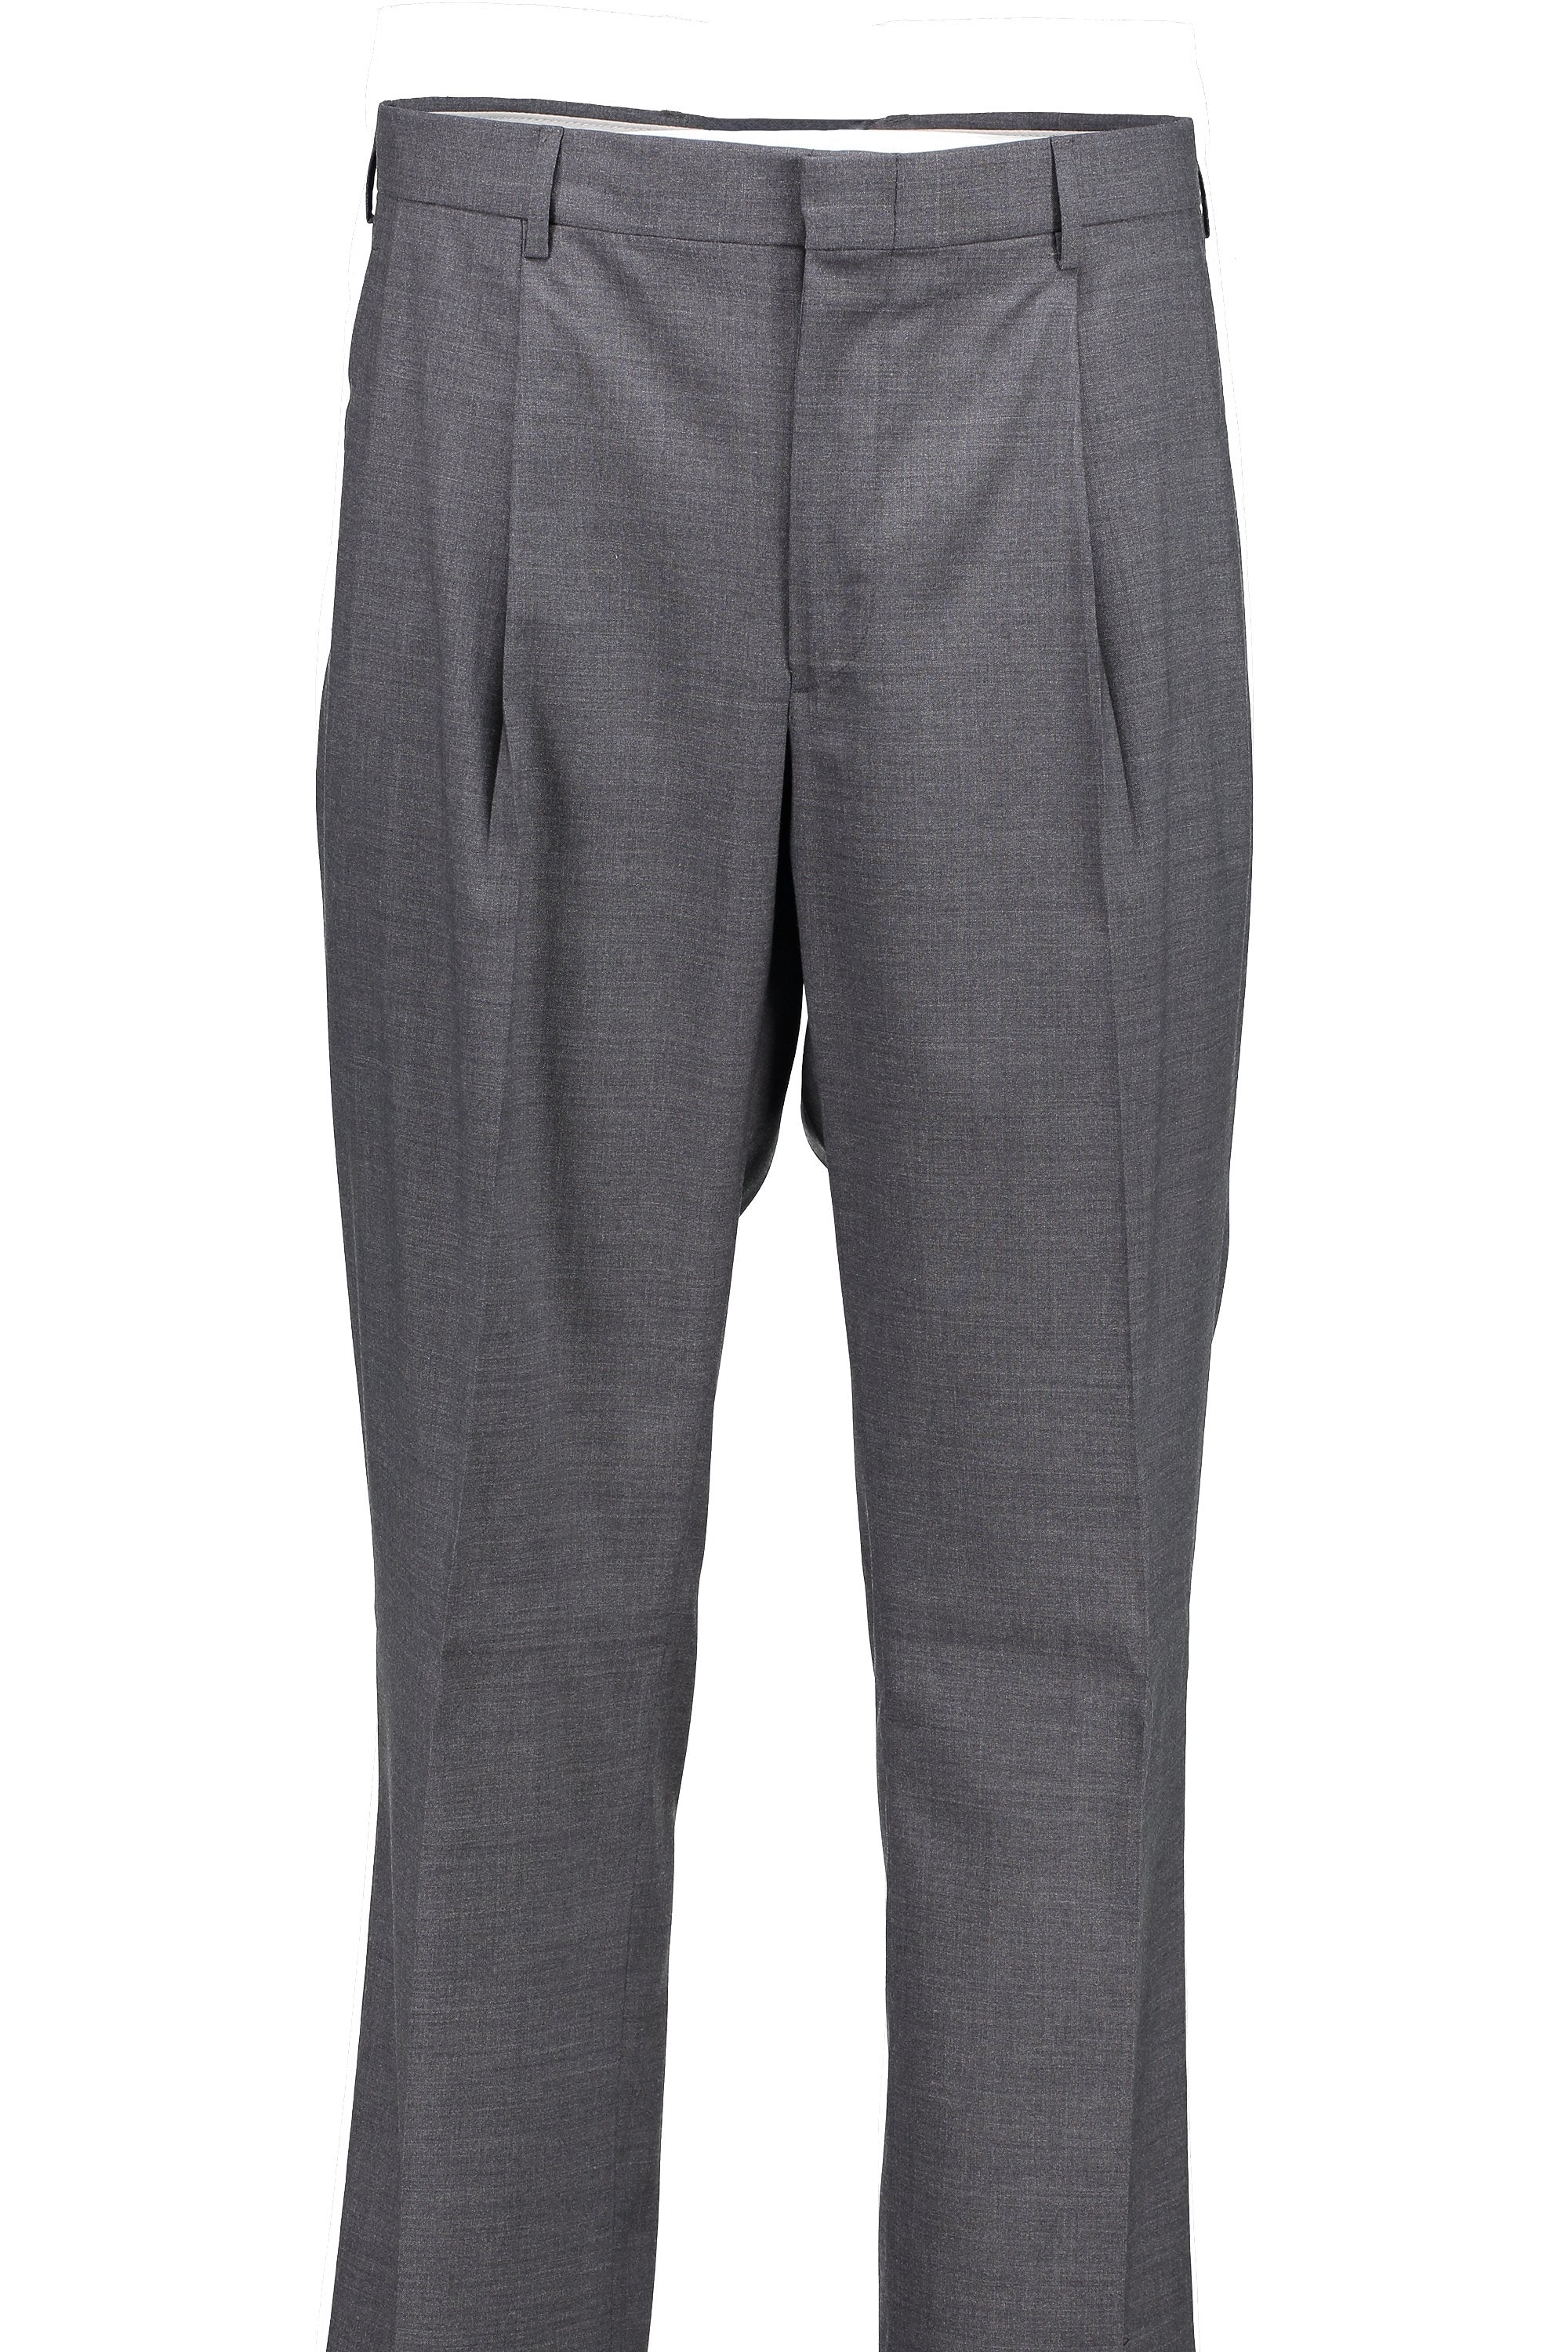 DTI Men's Suit Classic Fit Dress Pants Separates Slacks Pleated